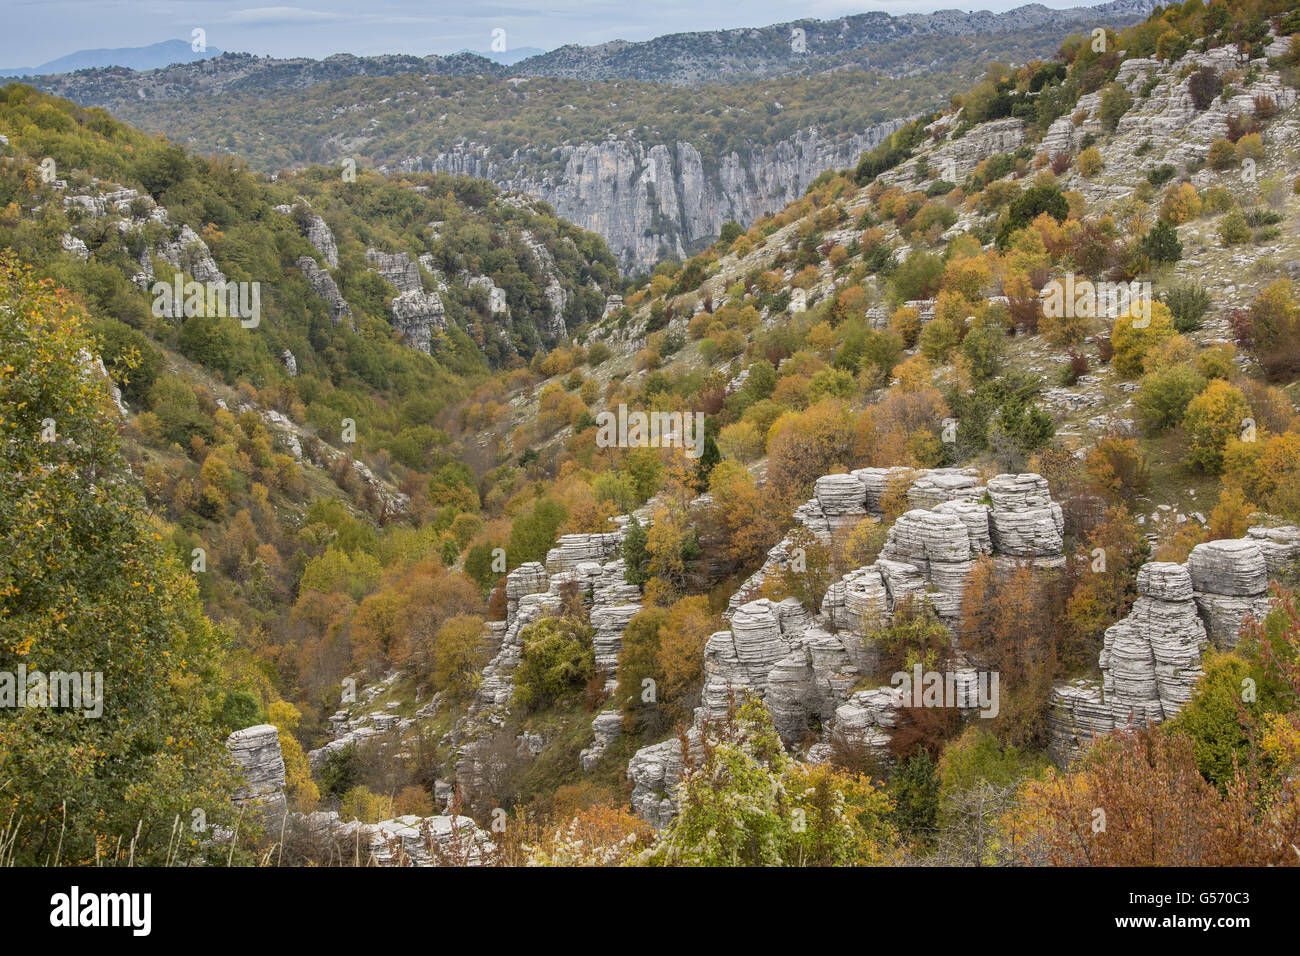 Limestone pinnacles and trees in autumn colour, above Kapesovo, Vikos-Aoos N.P., Zagori, Epirus, Greece, October Stock Photo